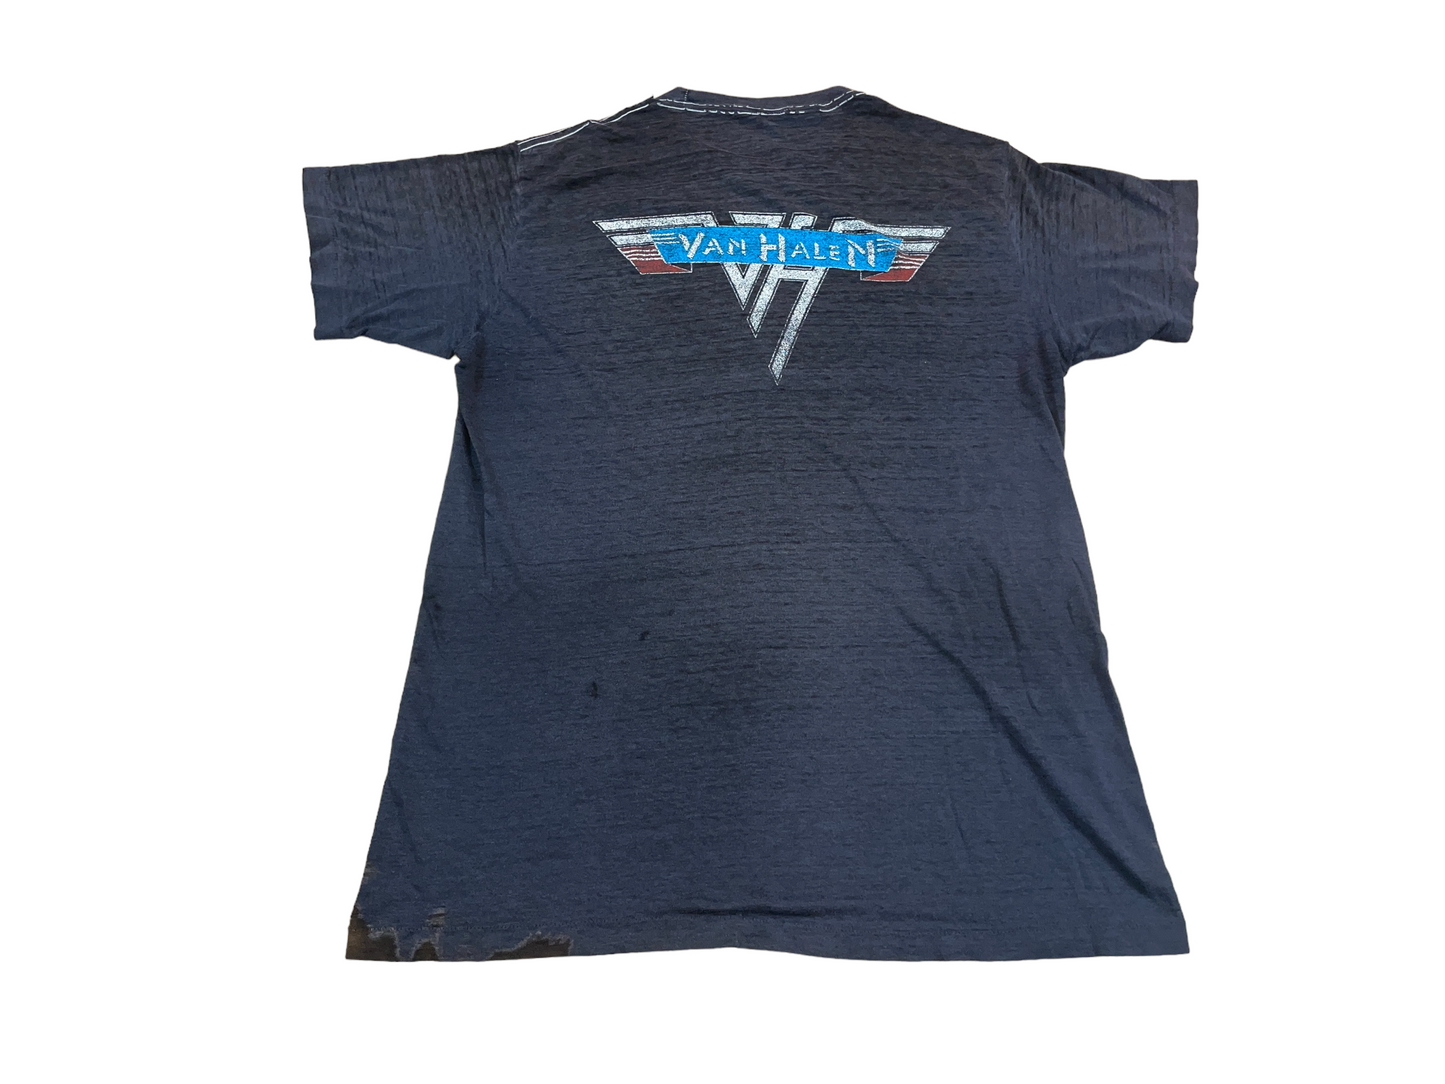 Vintage 80's Van Halen Tour T-Shirt